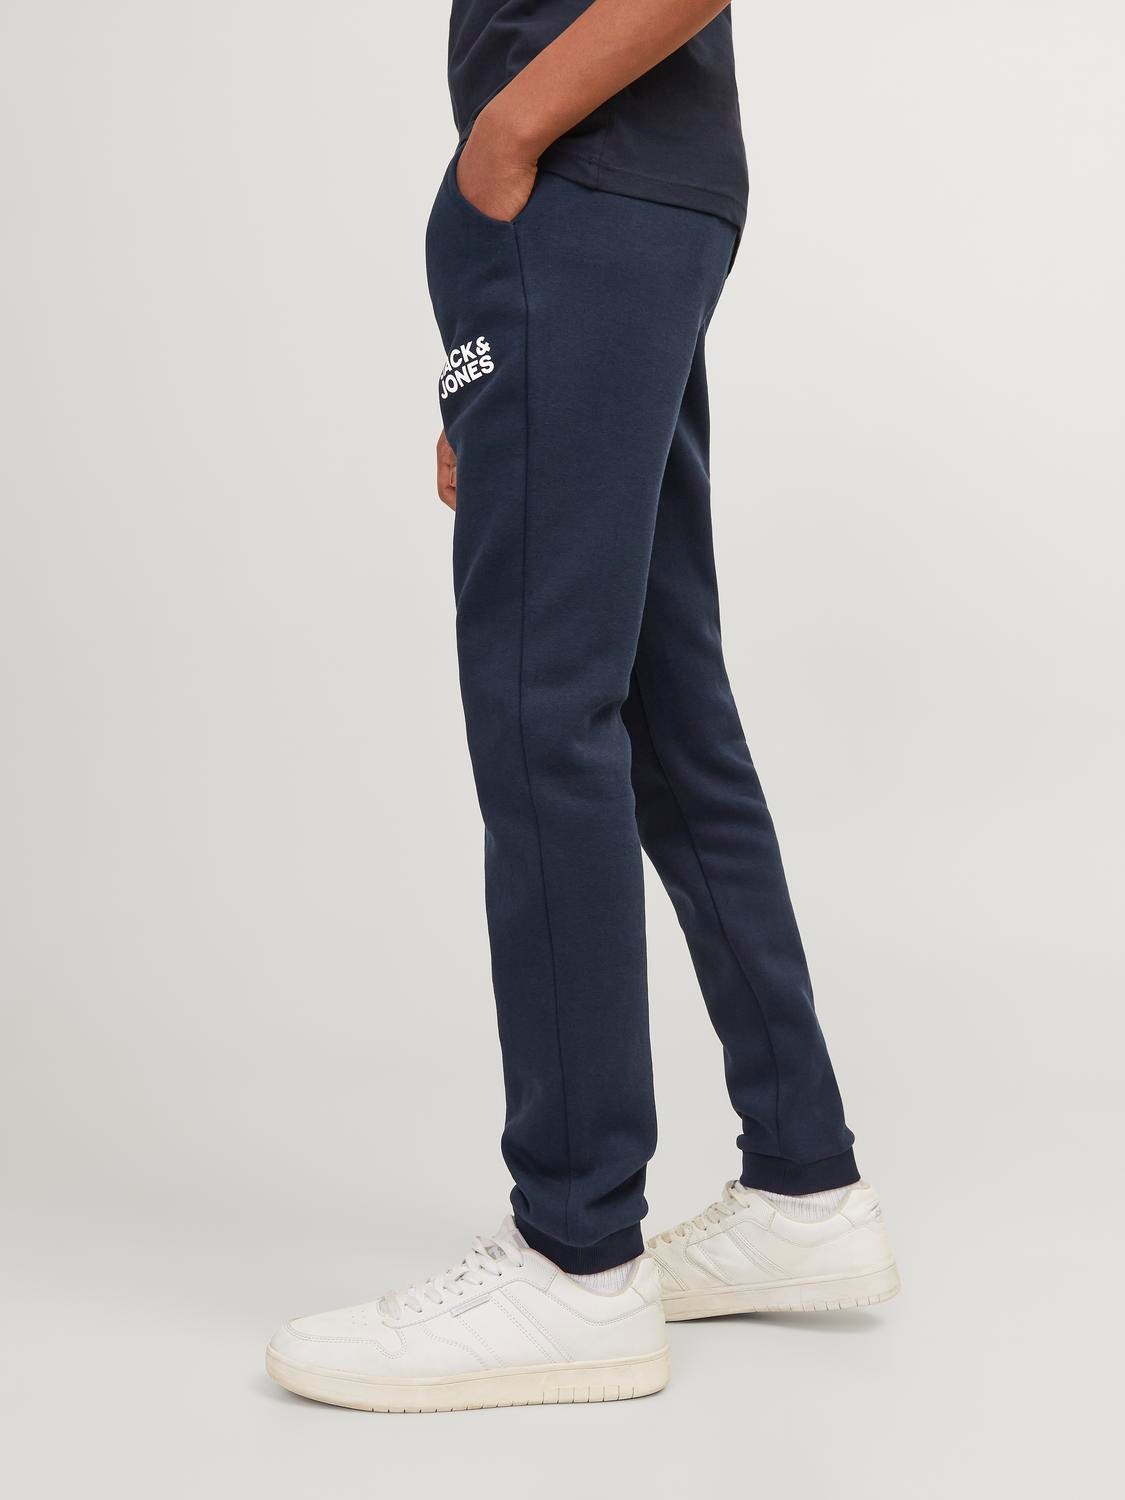 Jack & Jones Pantaloni in felpa Slim Fit Per Bambino -Navy Blazer - 12179798